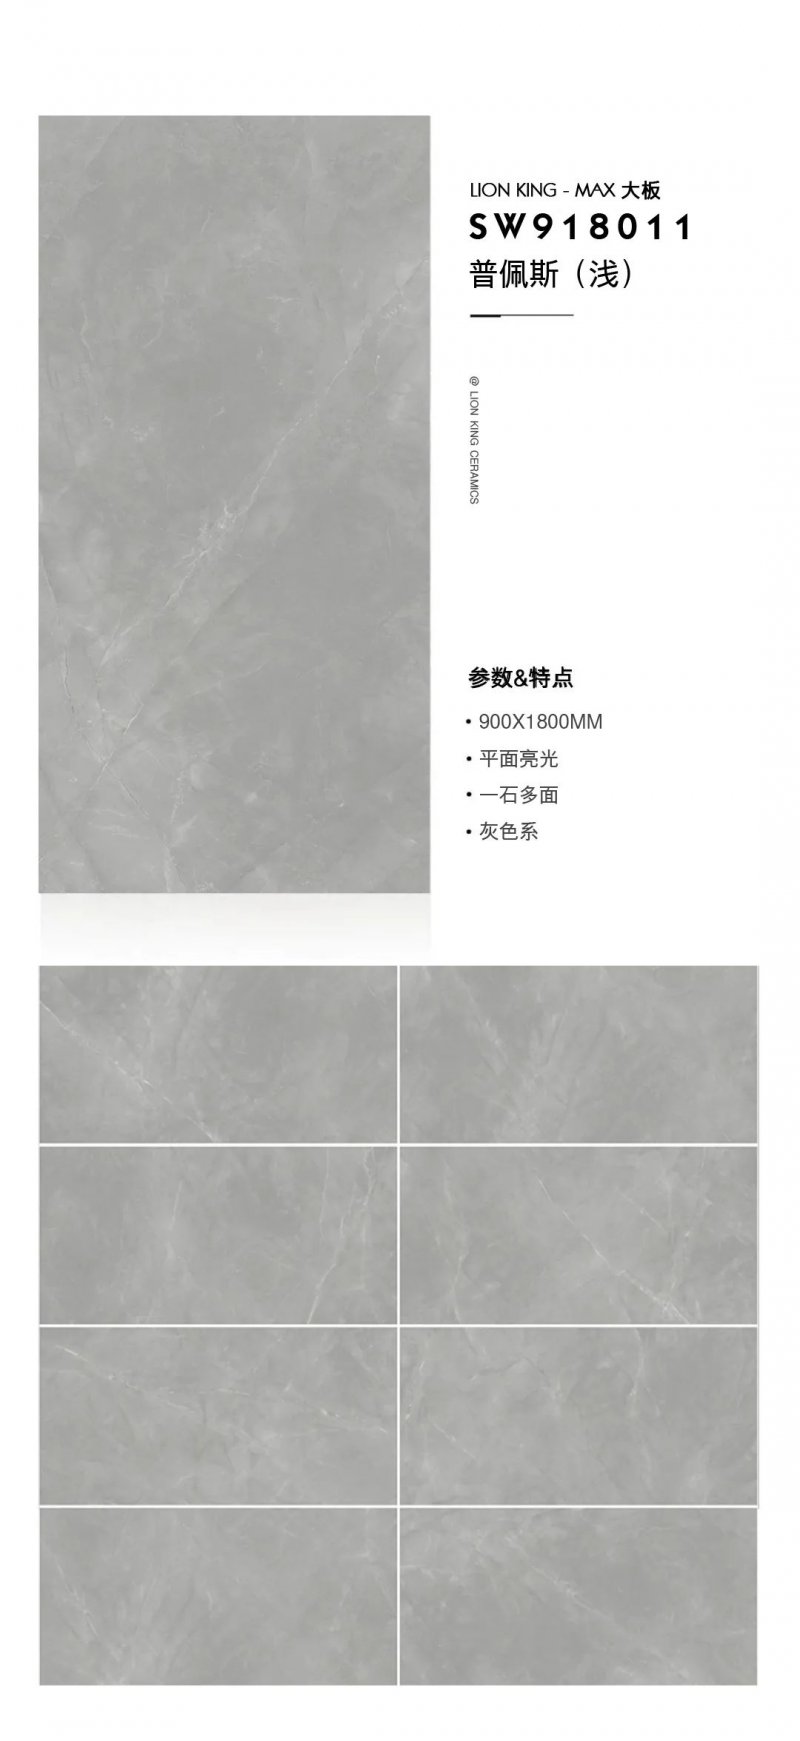 狮王瓷砖新品900x1800大板产品 陶瓷装修效果图_4